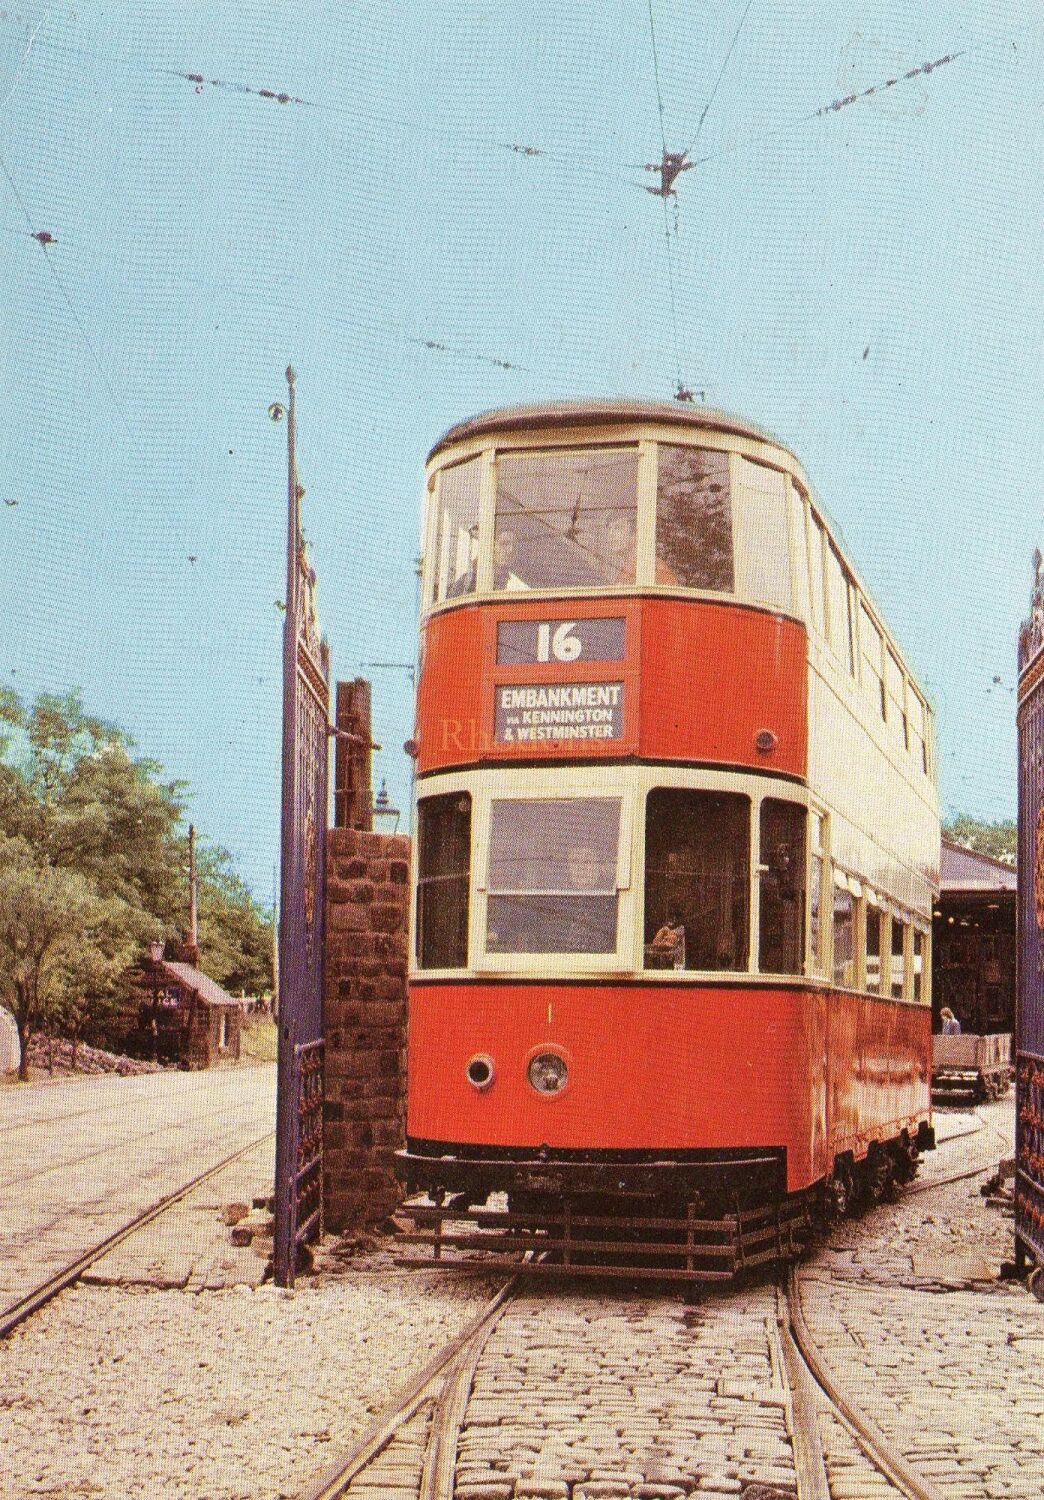 National Tram Museum, Crich, Matlock,Derbyshire-Circa 1980s Postcard